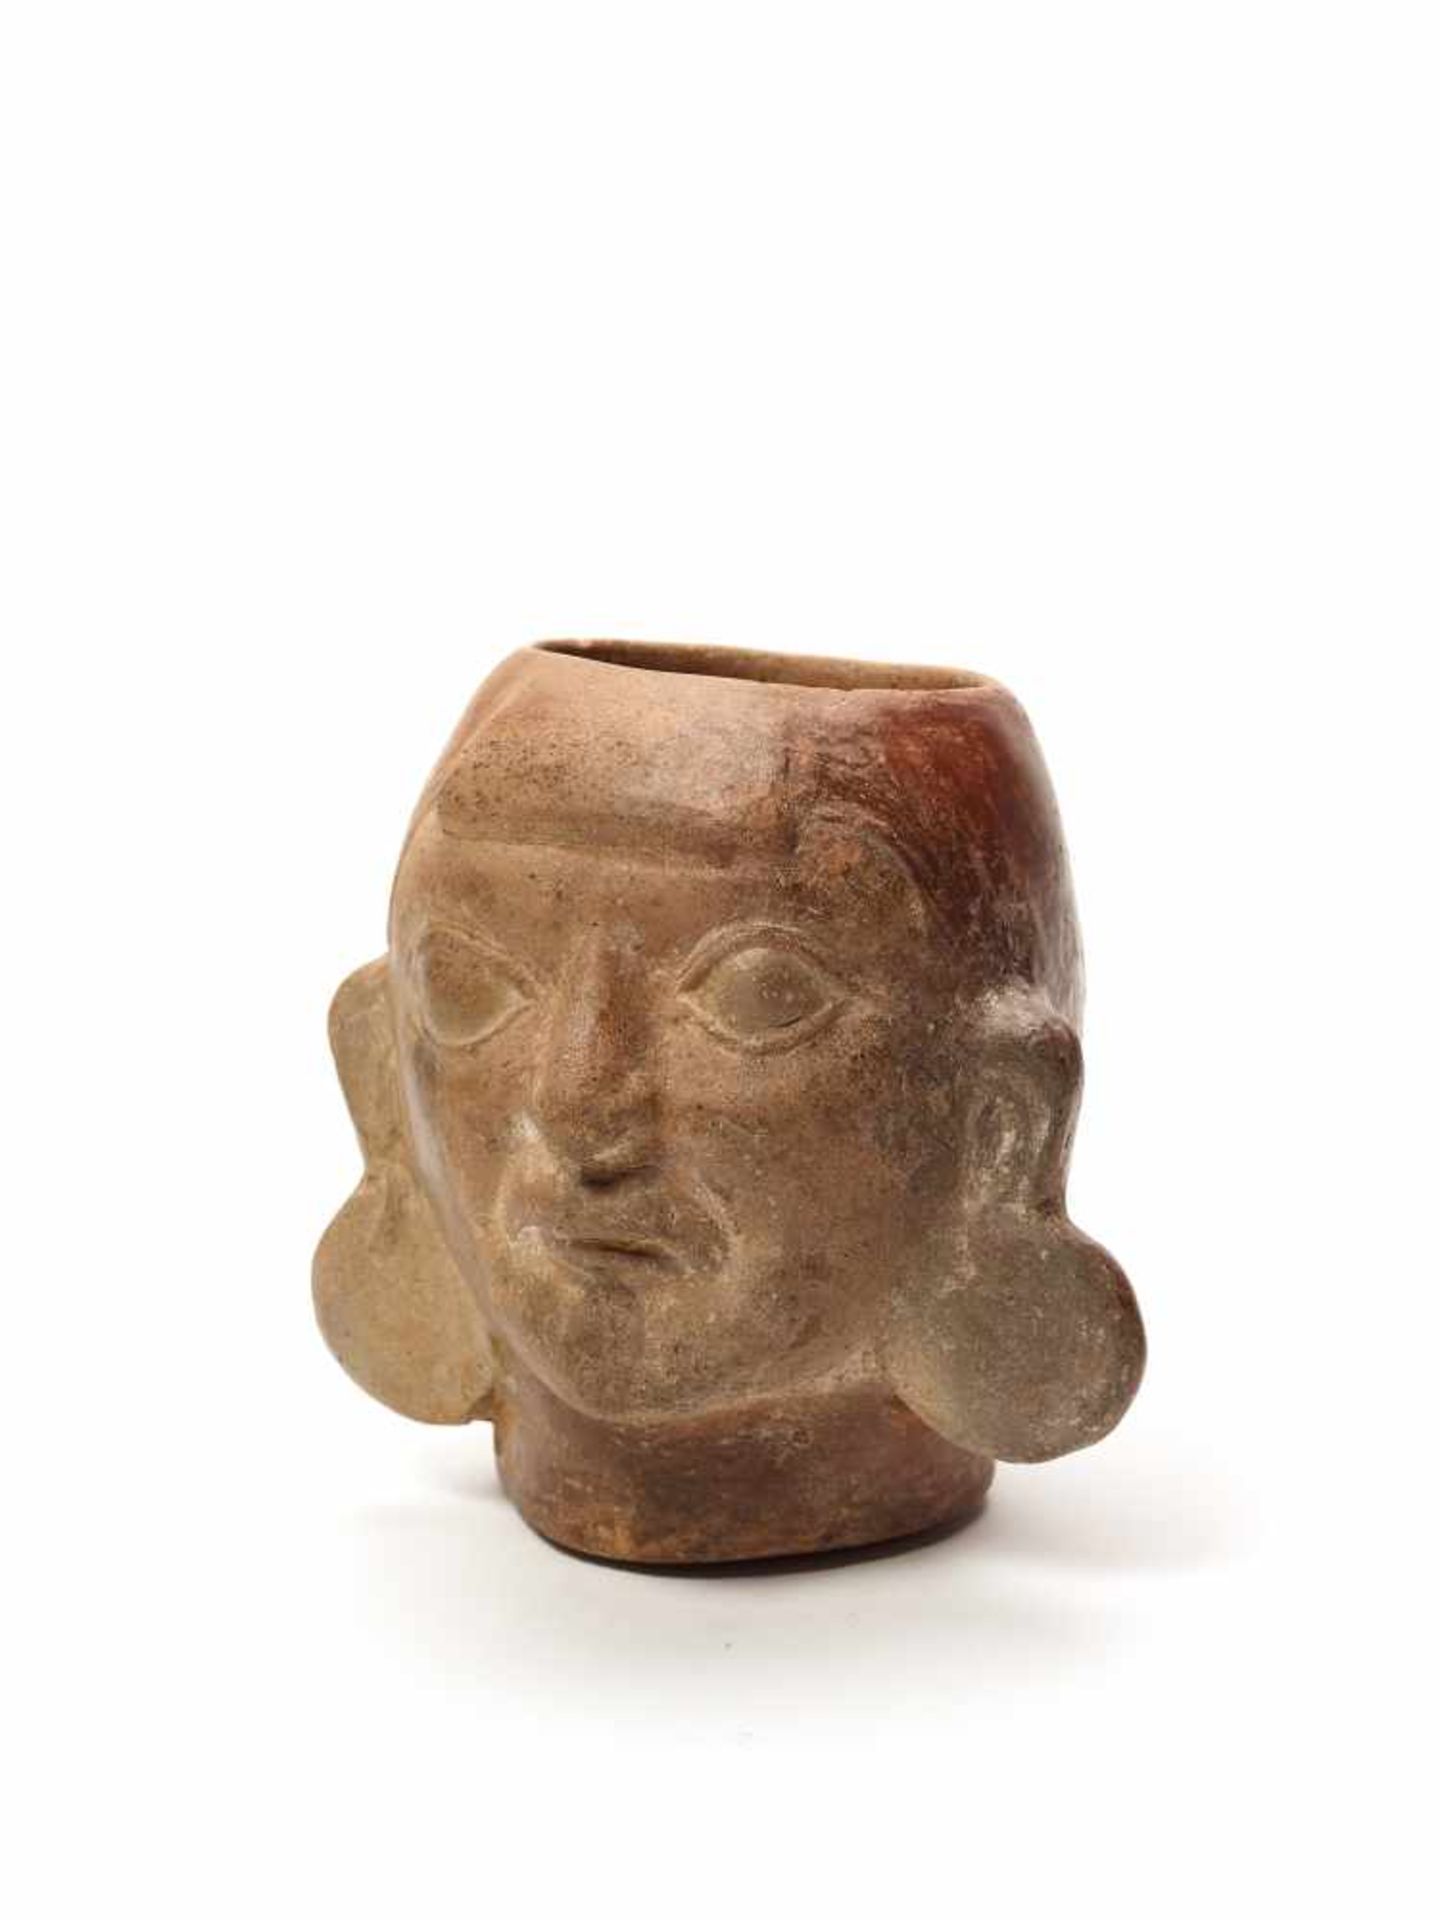 MUG IN THE SHAPE OF A HEAD – MOCHE CULTURE, PERU, C. 500 ADFired clayMoche culture, Peru, c. 500